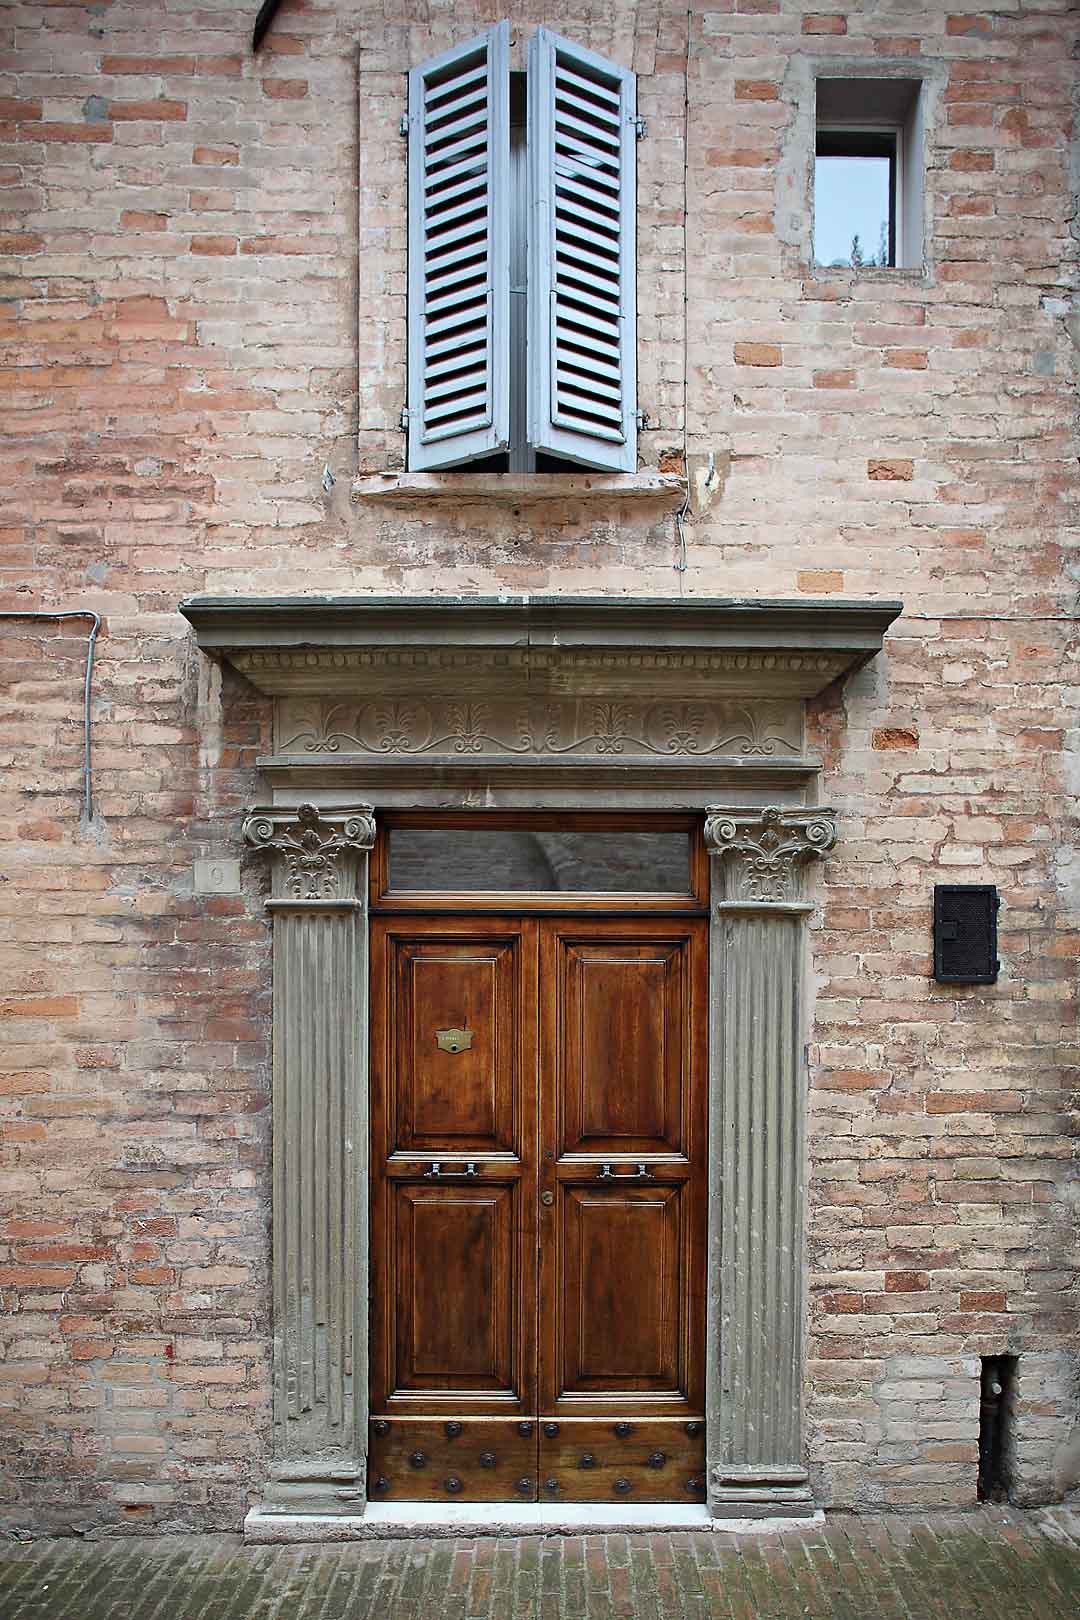 Via Piave #1, Urbino, Italy, 2008